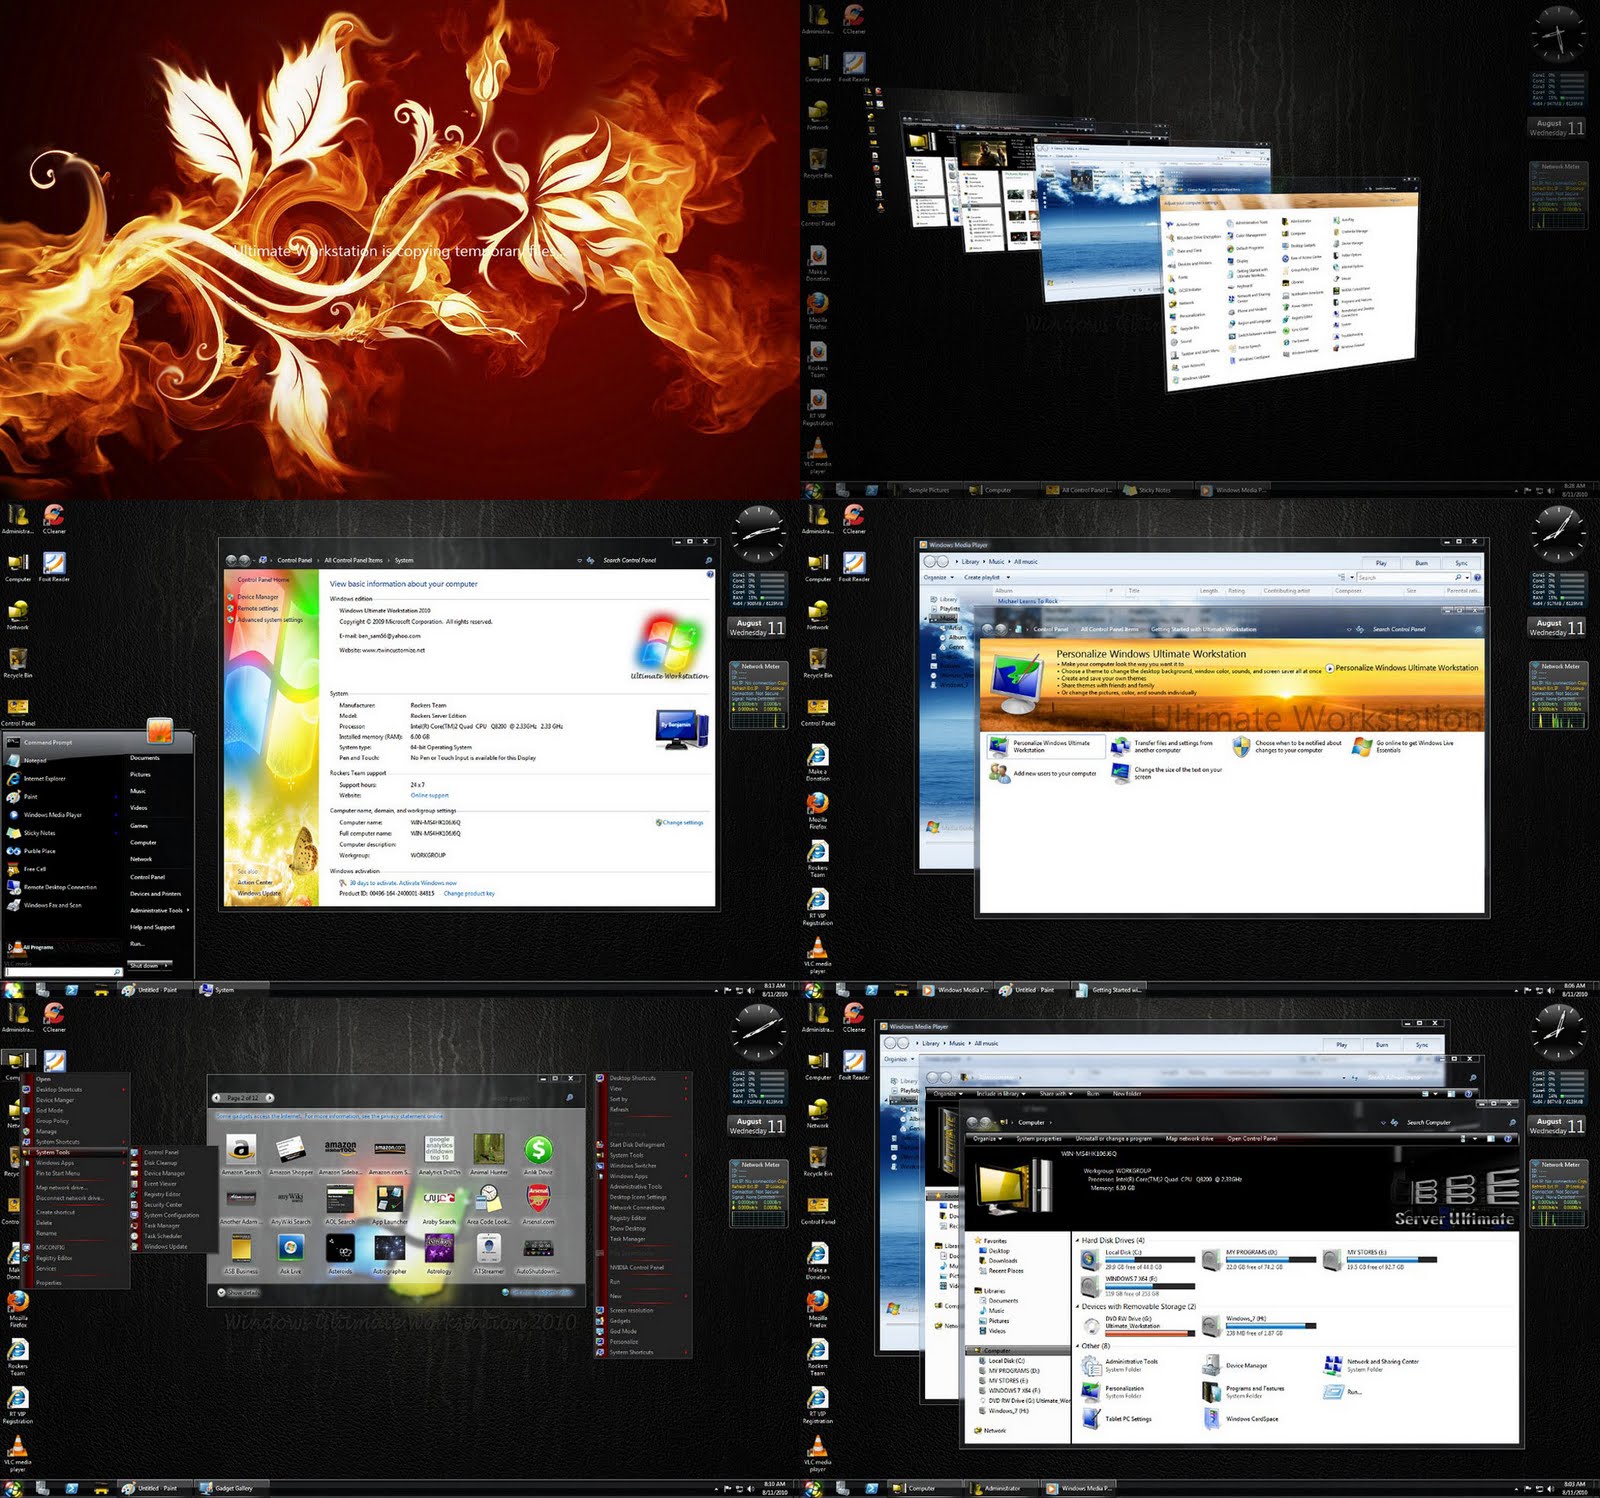 نظام Windows Ultimate Workstation 2011 x64 Bit برابط واحد مباشر يدعم الاستكمال Wwusrc